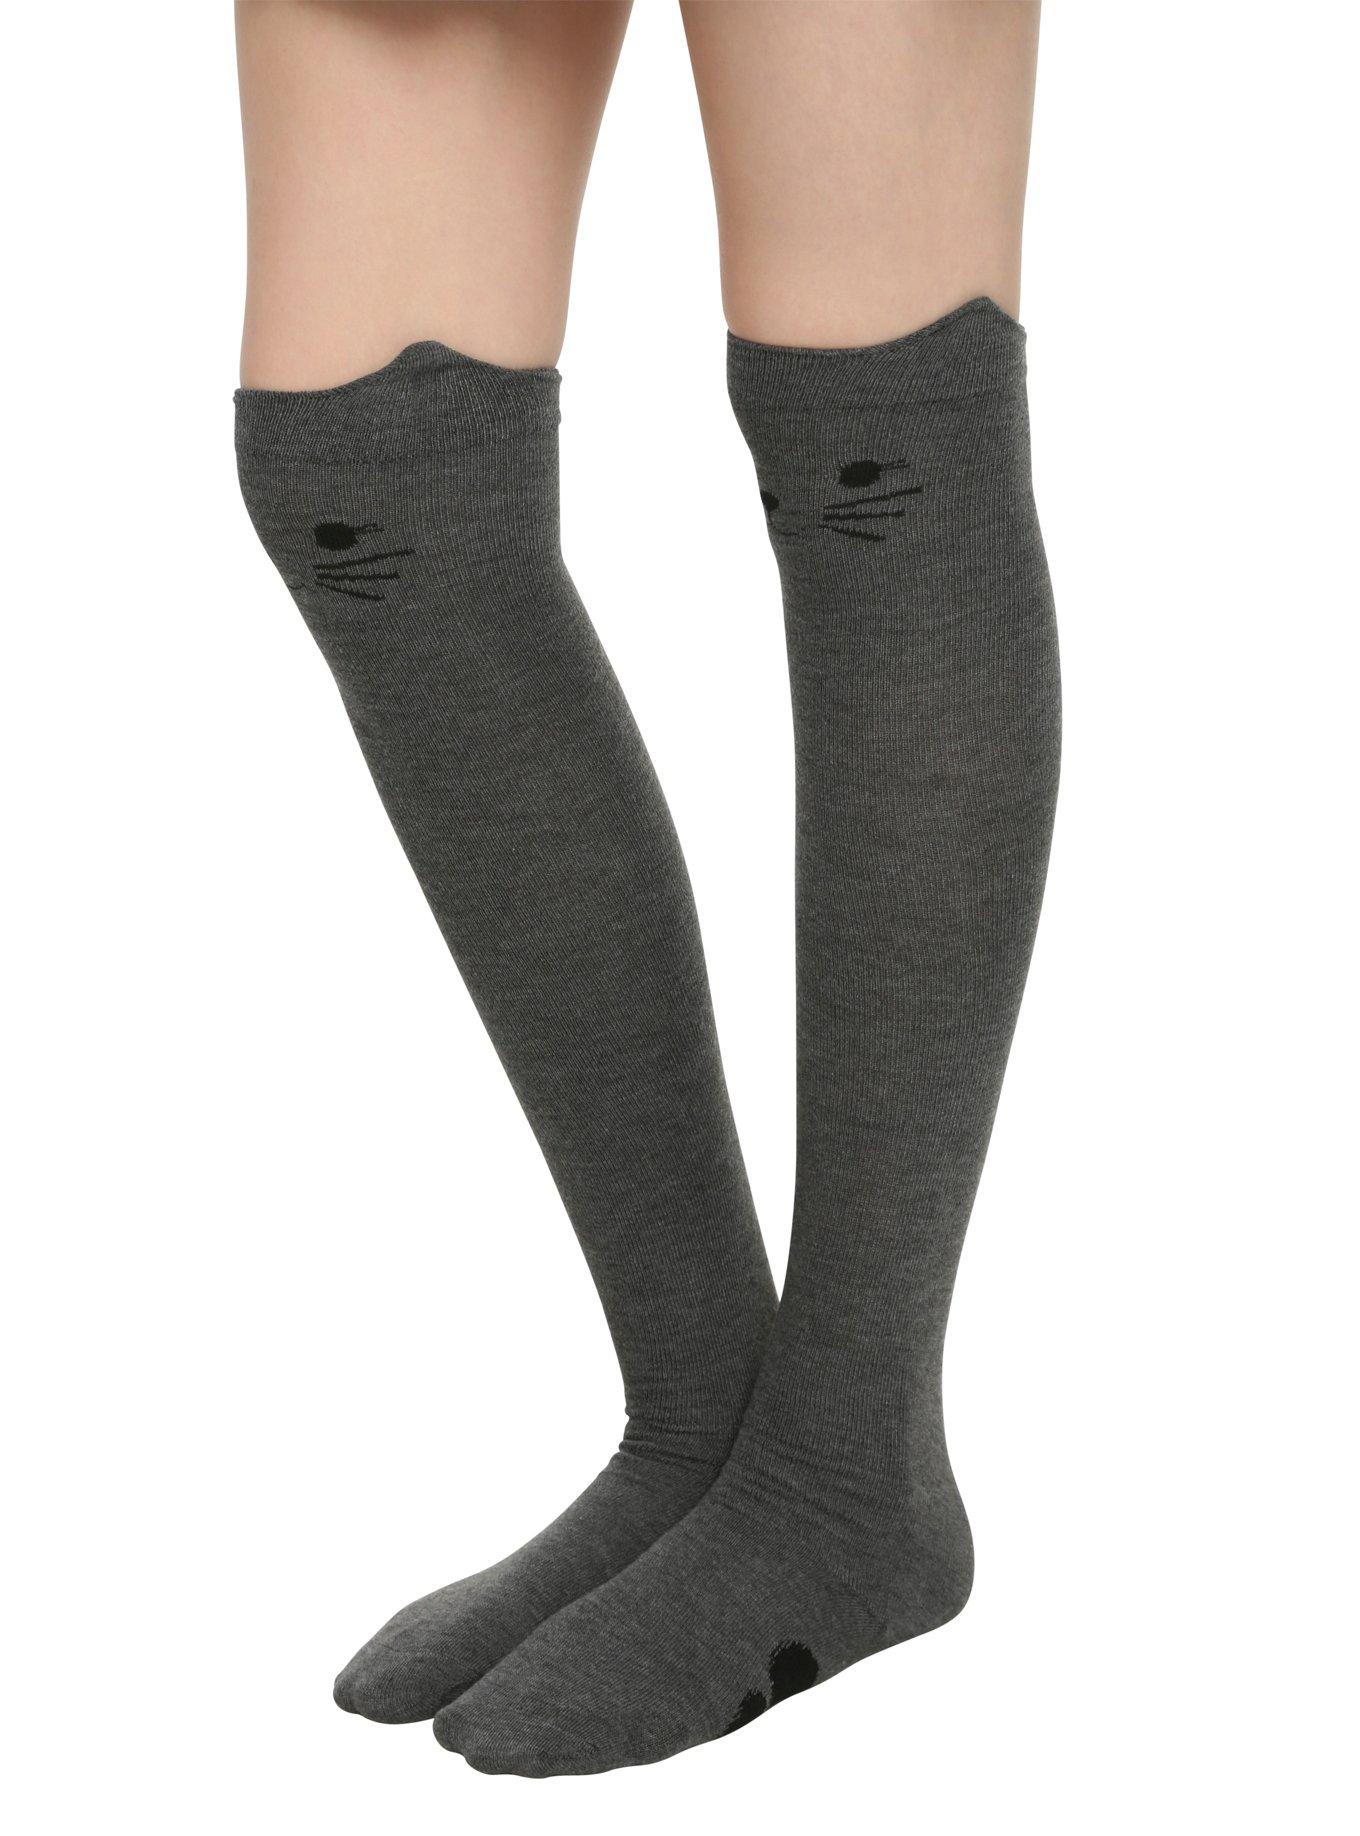 Blackheart Grey Kitty Over-The-Knee Socks, , alternate